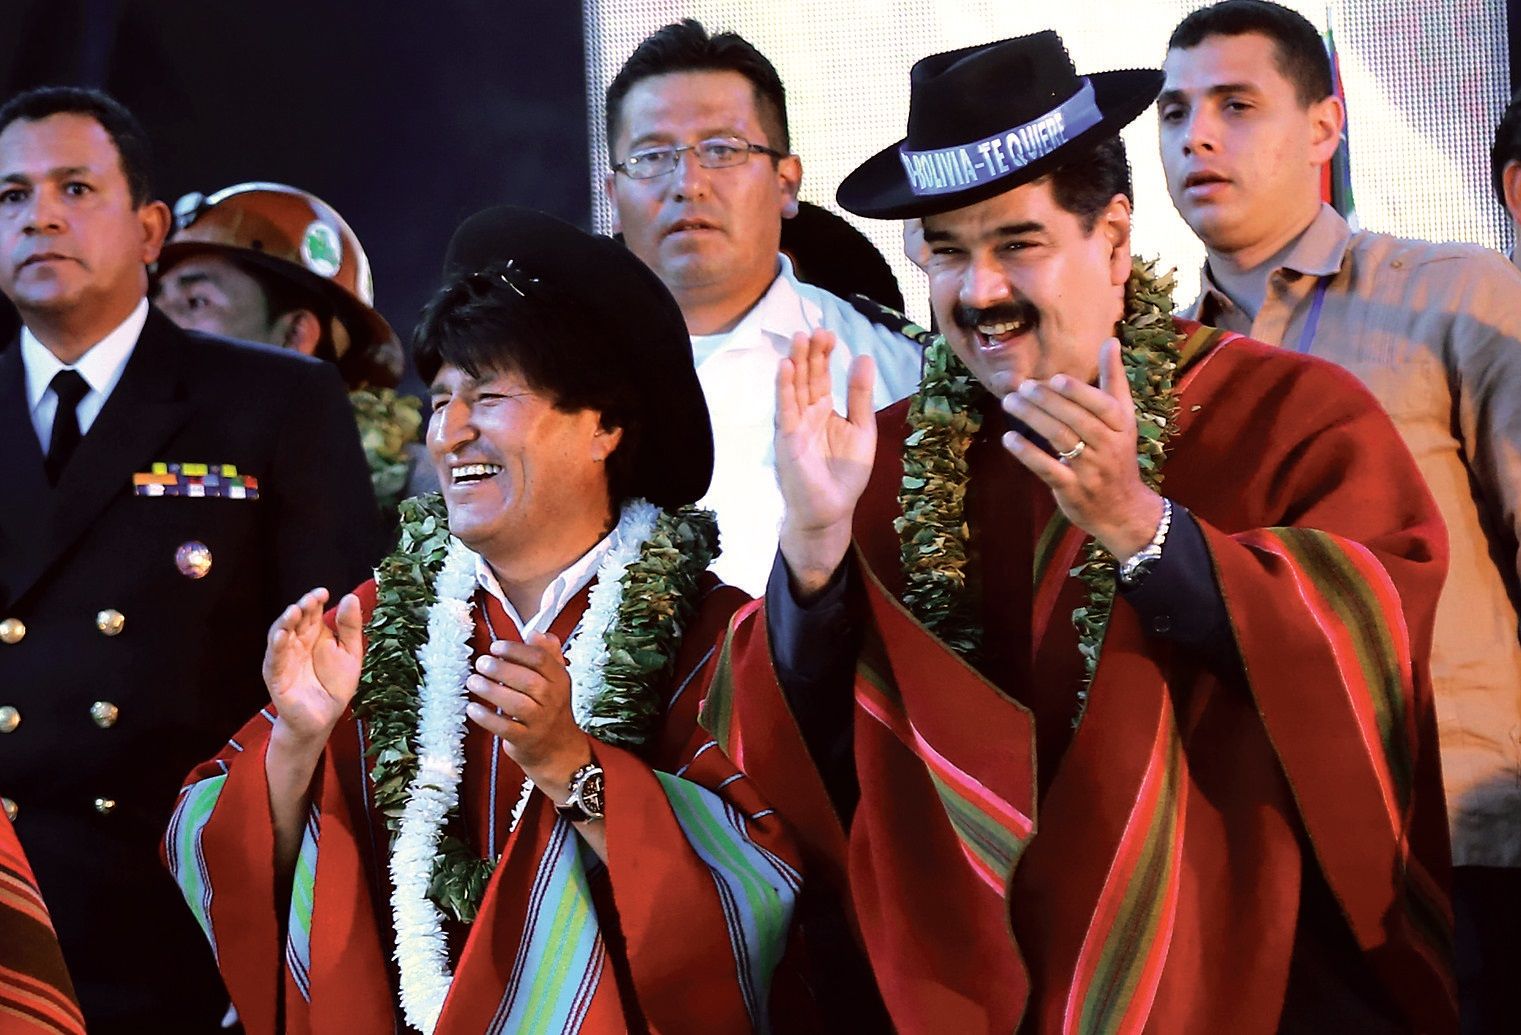 EEUU responsabilizó a Maduro y a Evo Morales de promover violencia en Latinoamérica